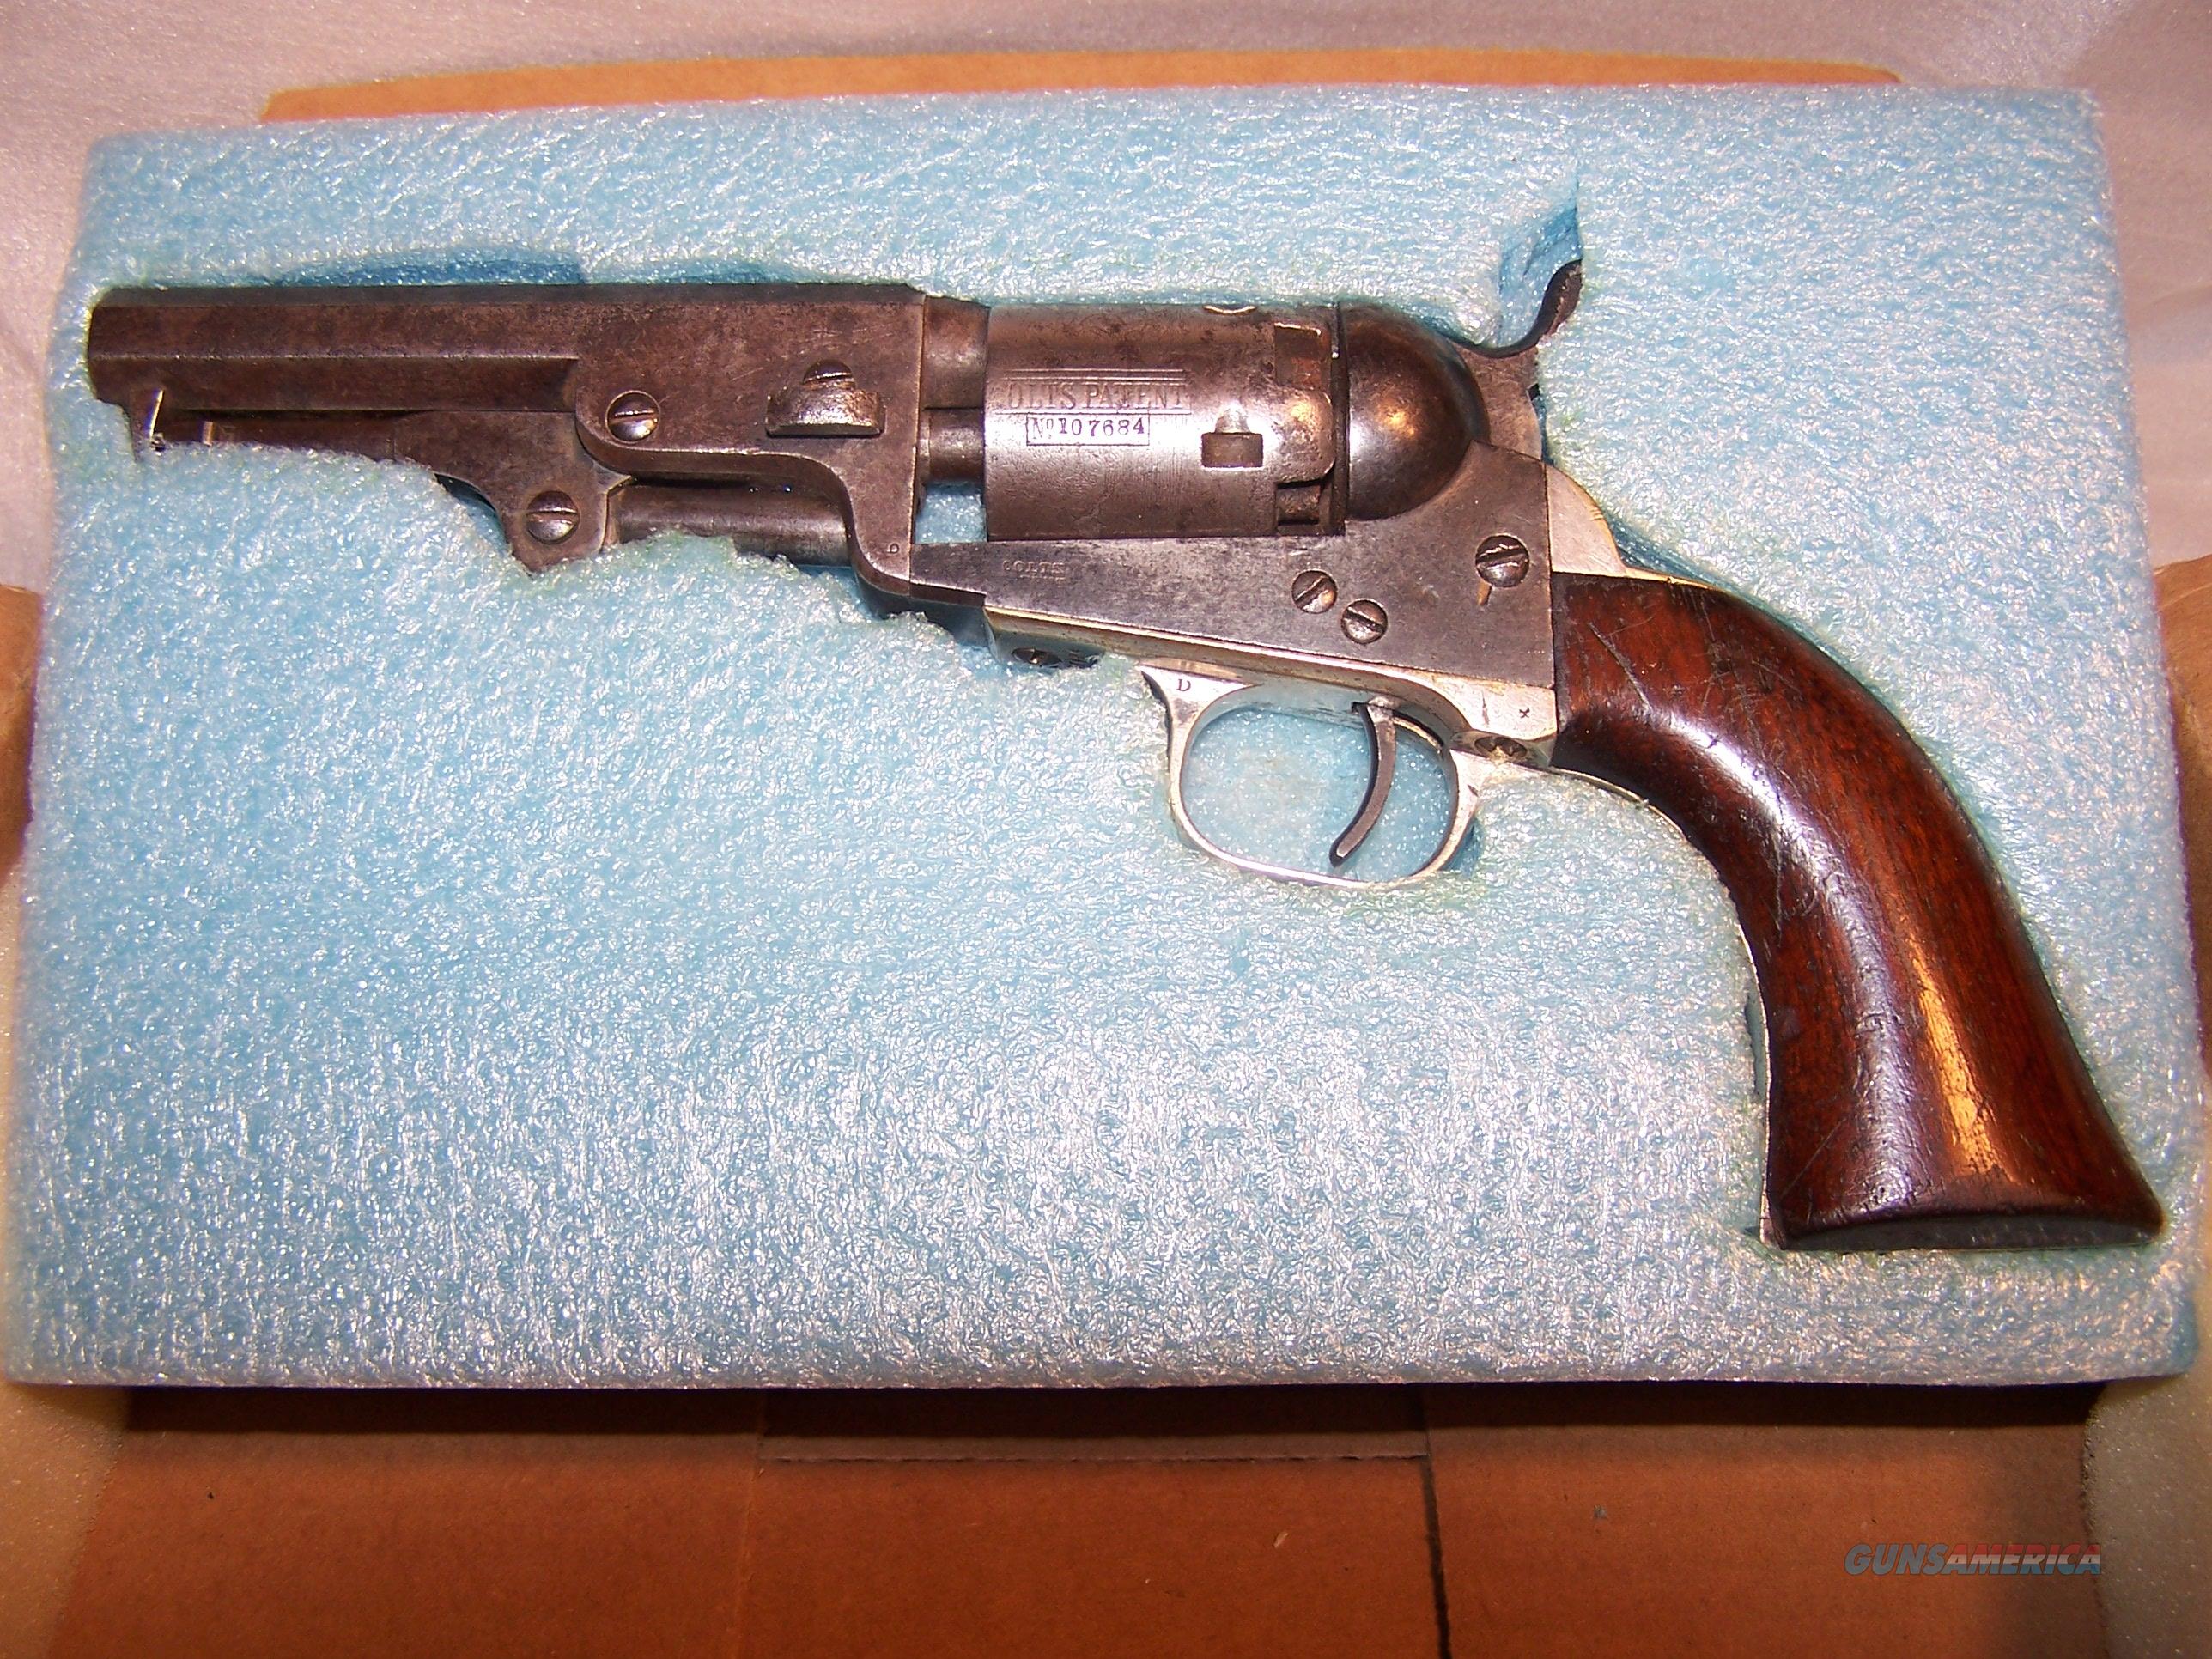 Sam'l Colt original authentic model... for sale at Gunsamerica.com ...